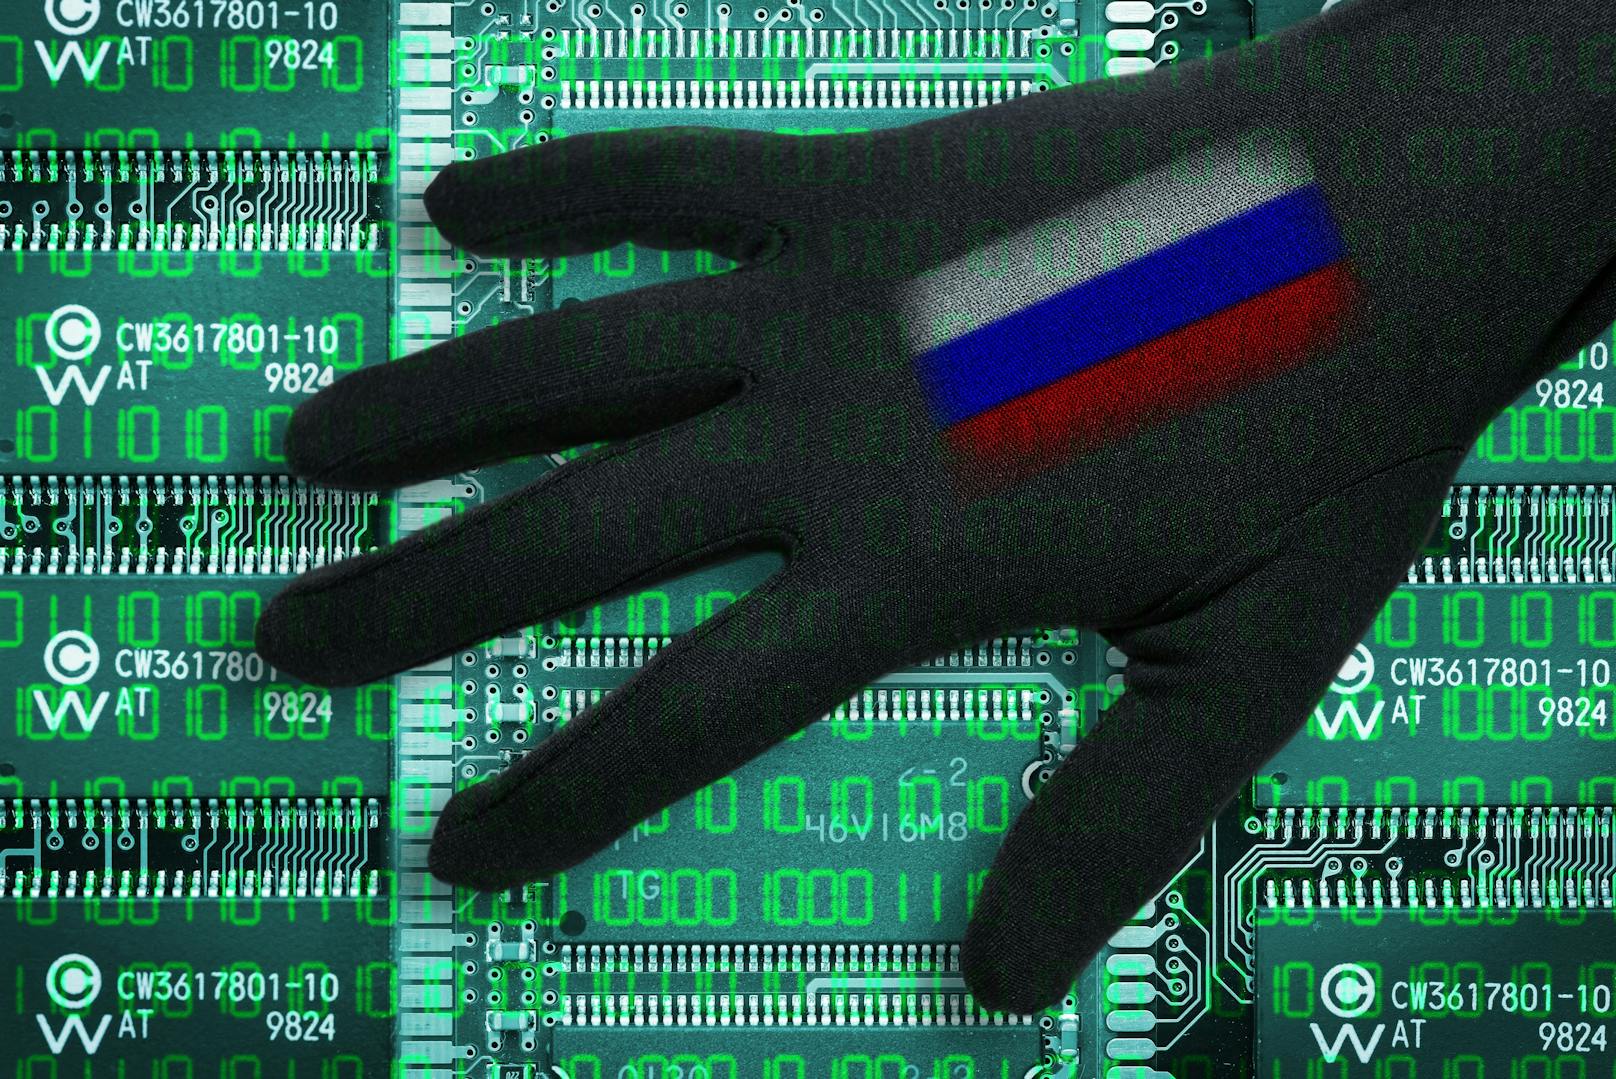 Der "Bild" zufolge haben russische Hacker Banken in Deutschland ins Visier genommen. Die Behörden bestätigen den Angriff.